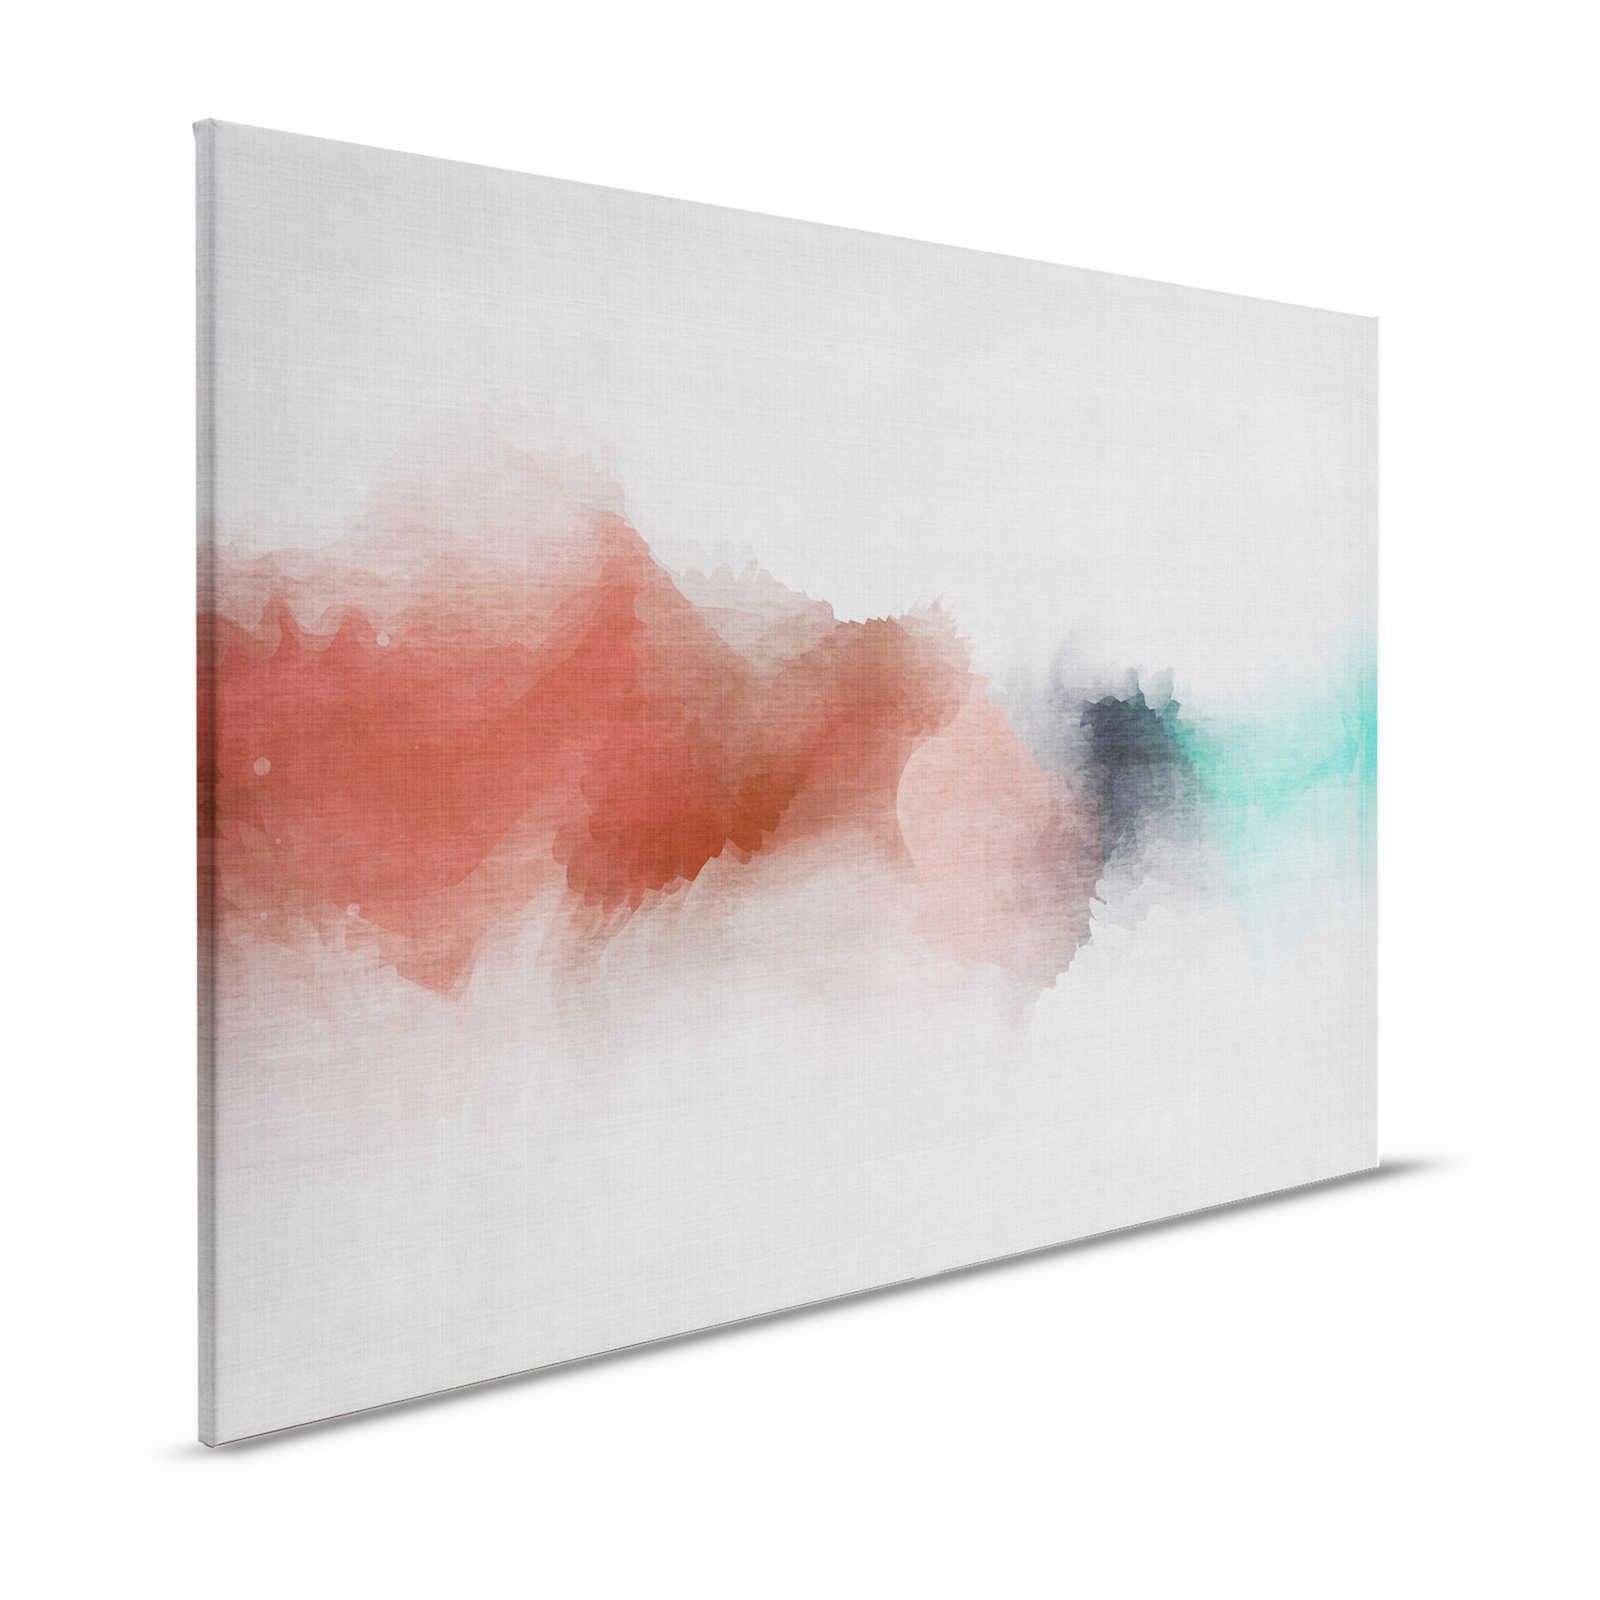 Daydream 2 - Cuadro en lienzo con aspecto de lino natural y tinte de color estilo acuarela - 1,20 m x 0,80 m
